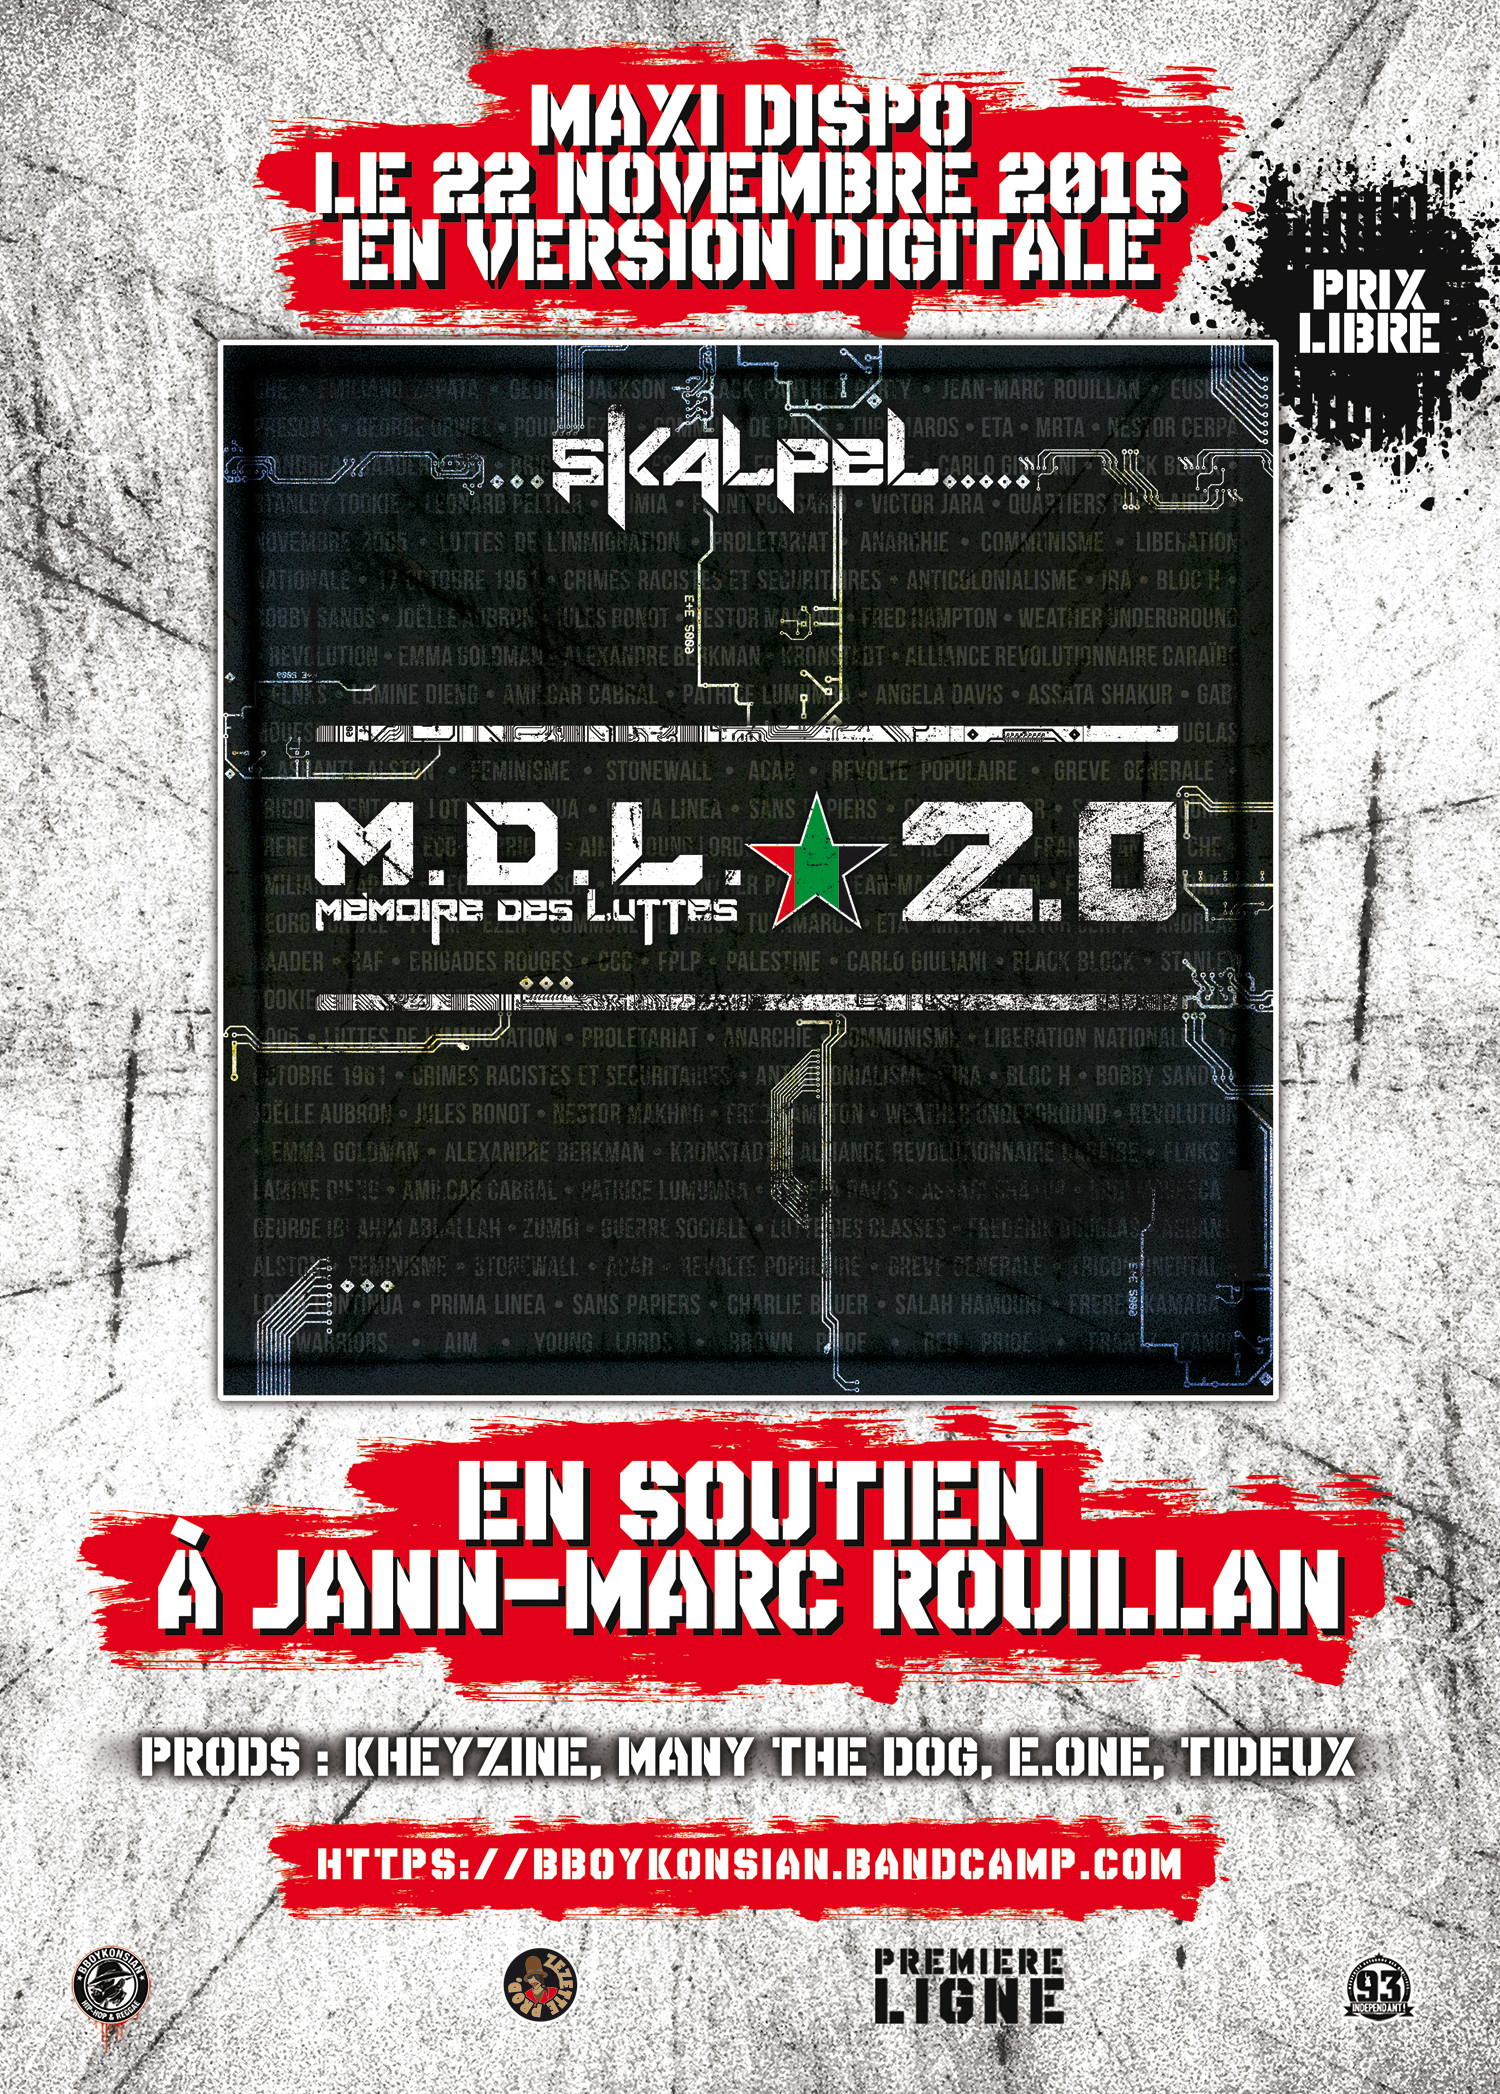 Le maxi 'M.D.L. 2.0' de Skalpel disponible le 22 novembre 2016